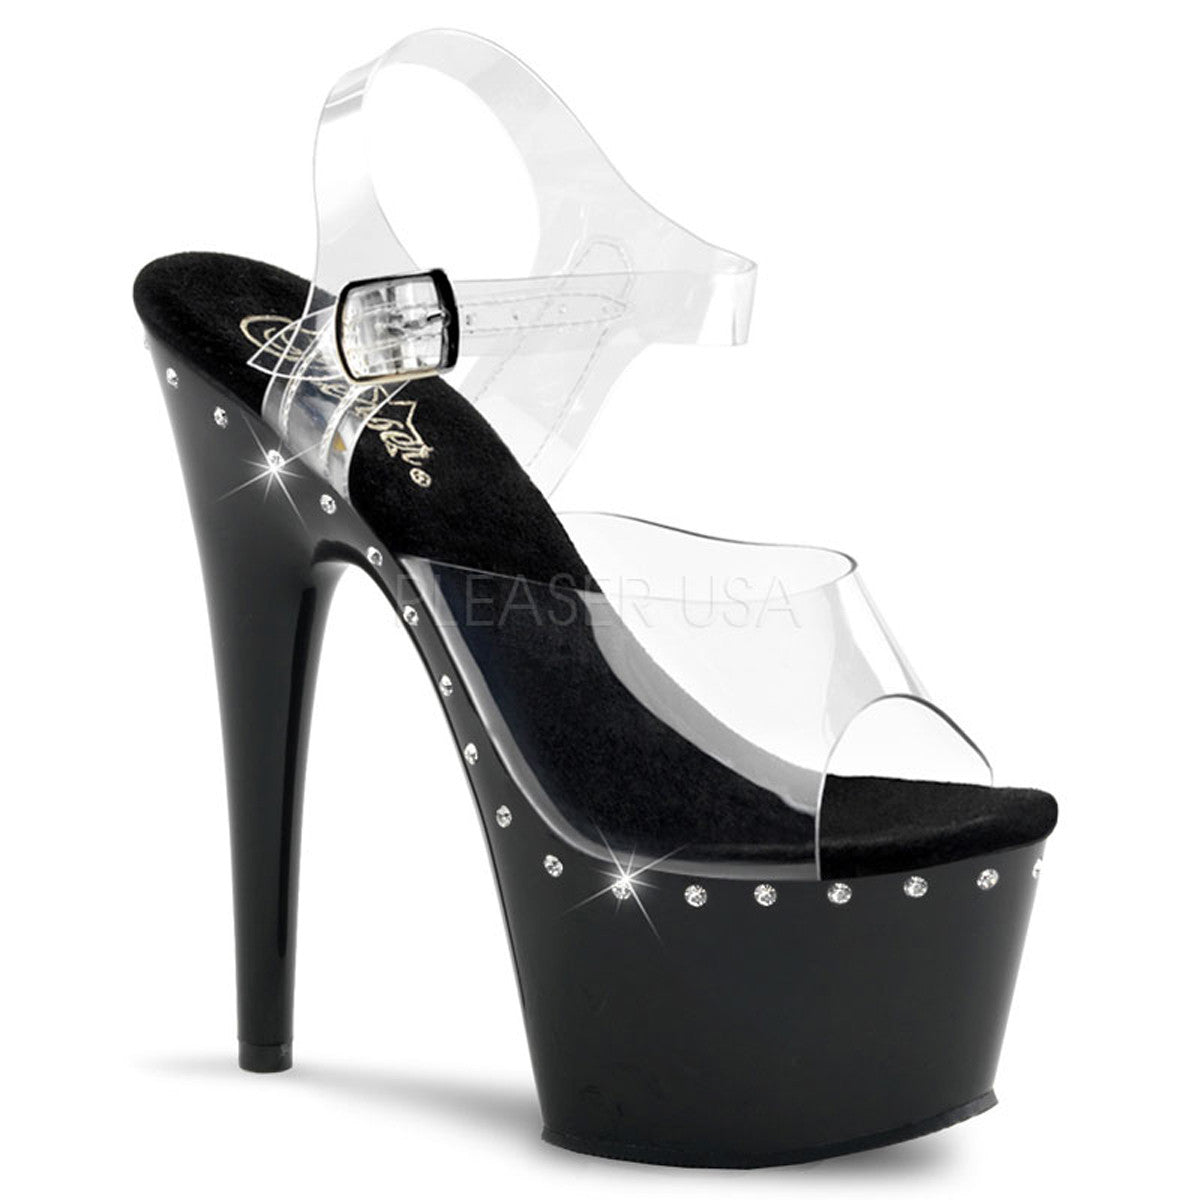 PLEASER ADORE-708LS Clear-Black Ankle Strap Sandals - Shoecup.com - 1